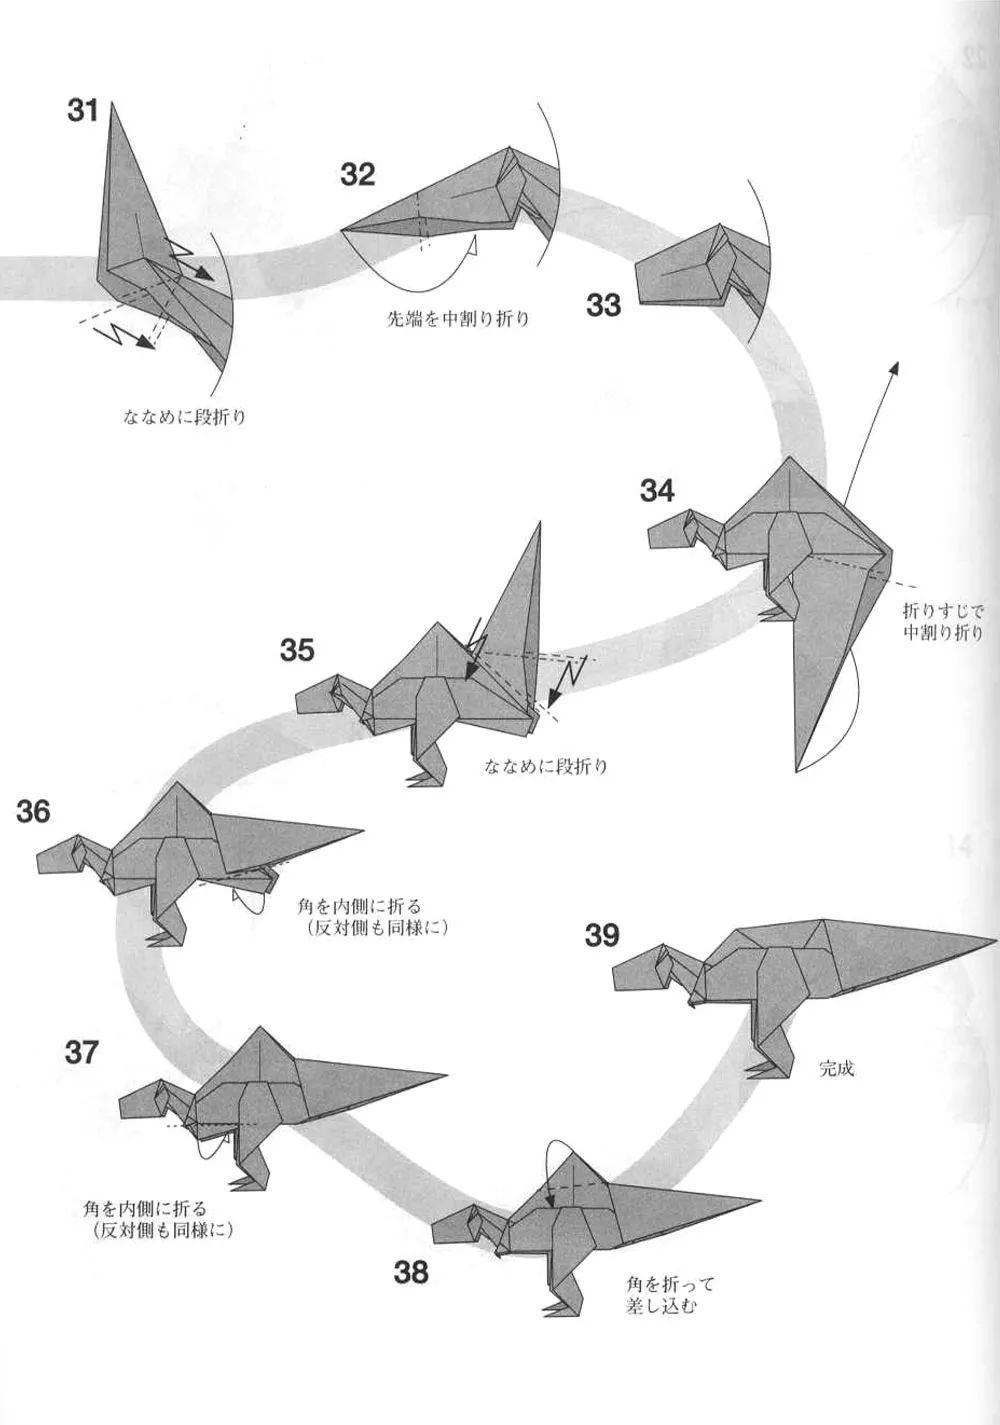 恐龙折纸大全之霸王龙图片